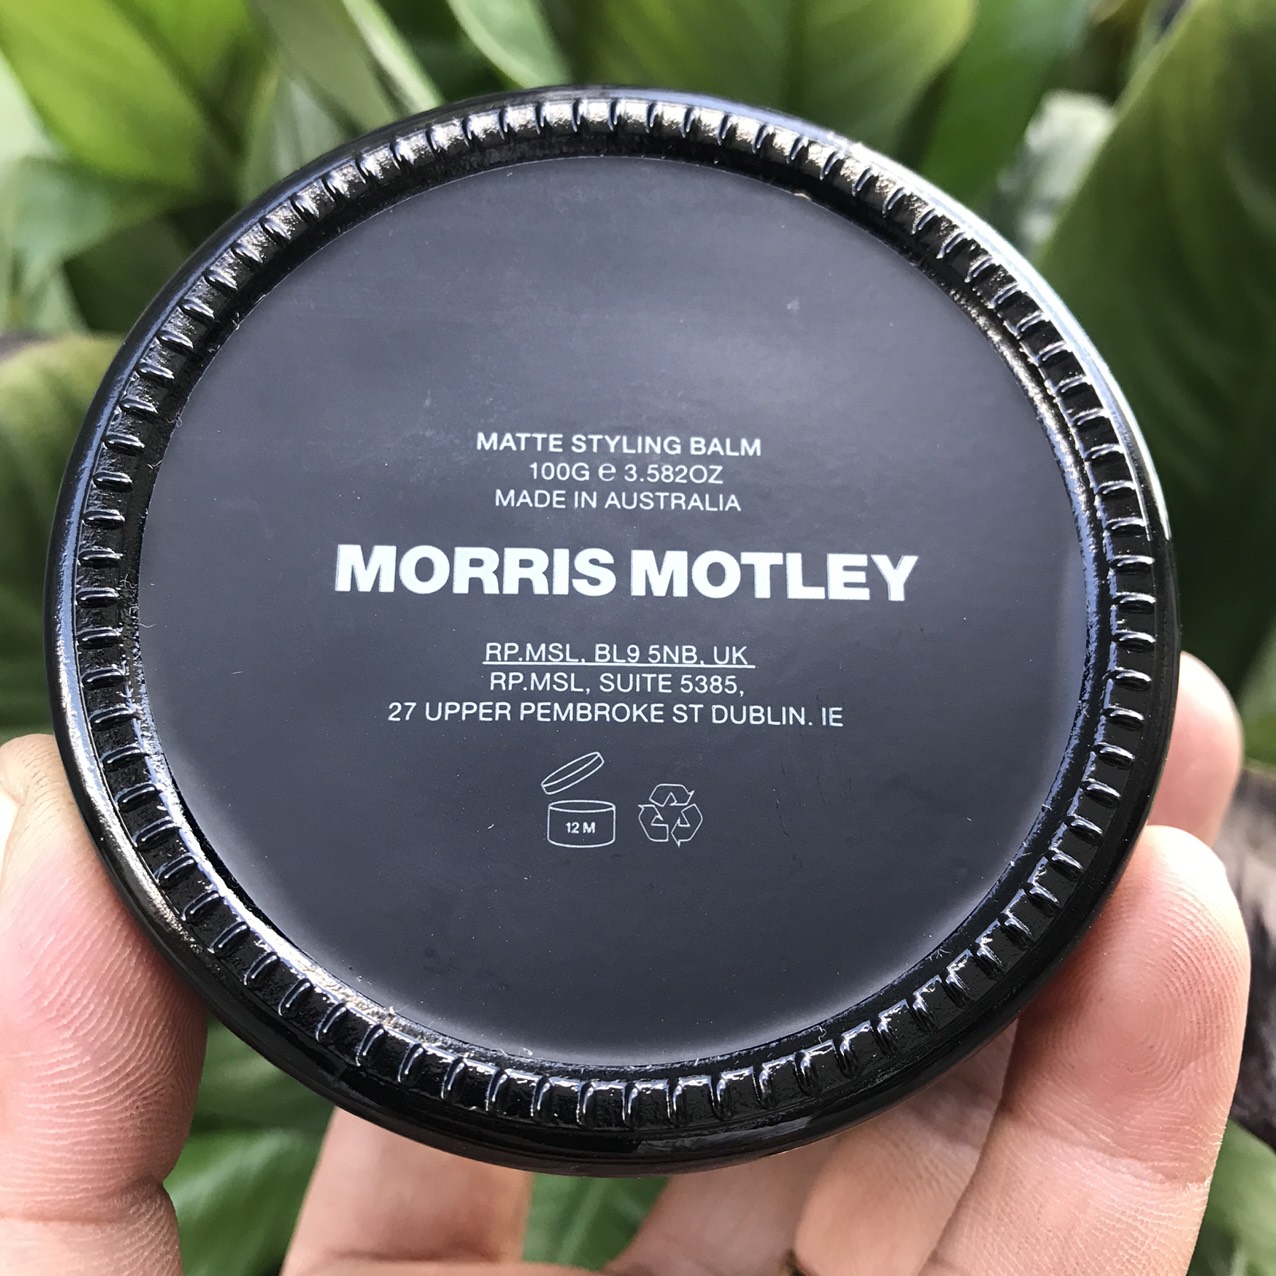 Đánh giá sáp vuốt tóc Morris Motley Strong Styling Balm MỚI NHẤT I Sáp vuốt  tóc xịn nhất hiện tại  YouTube